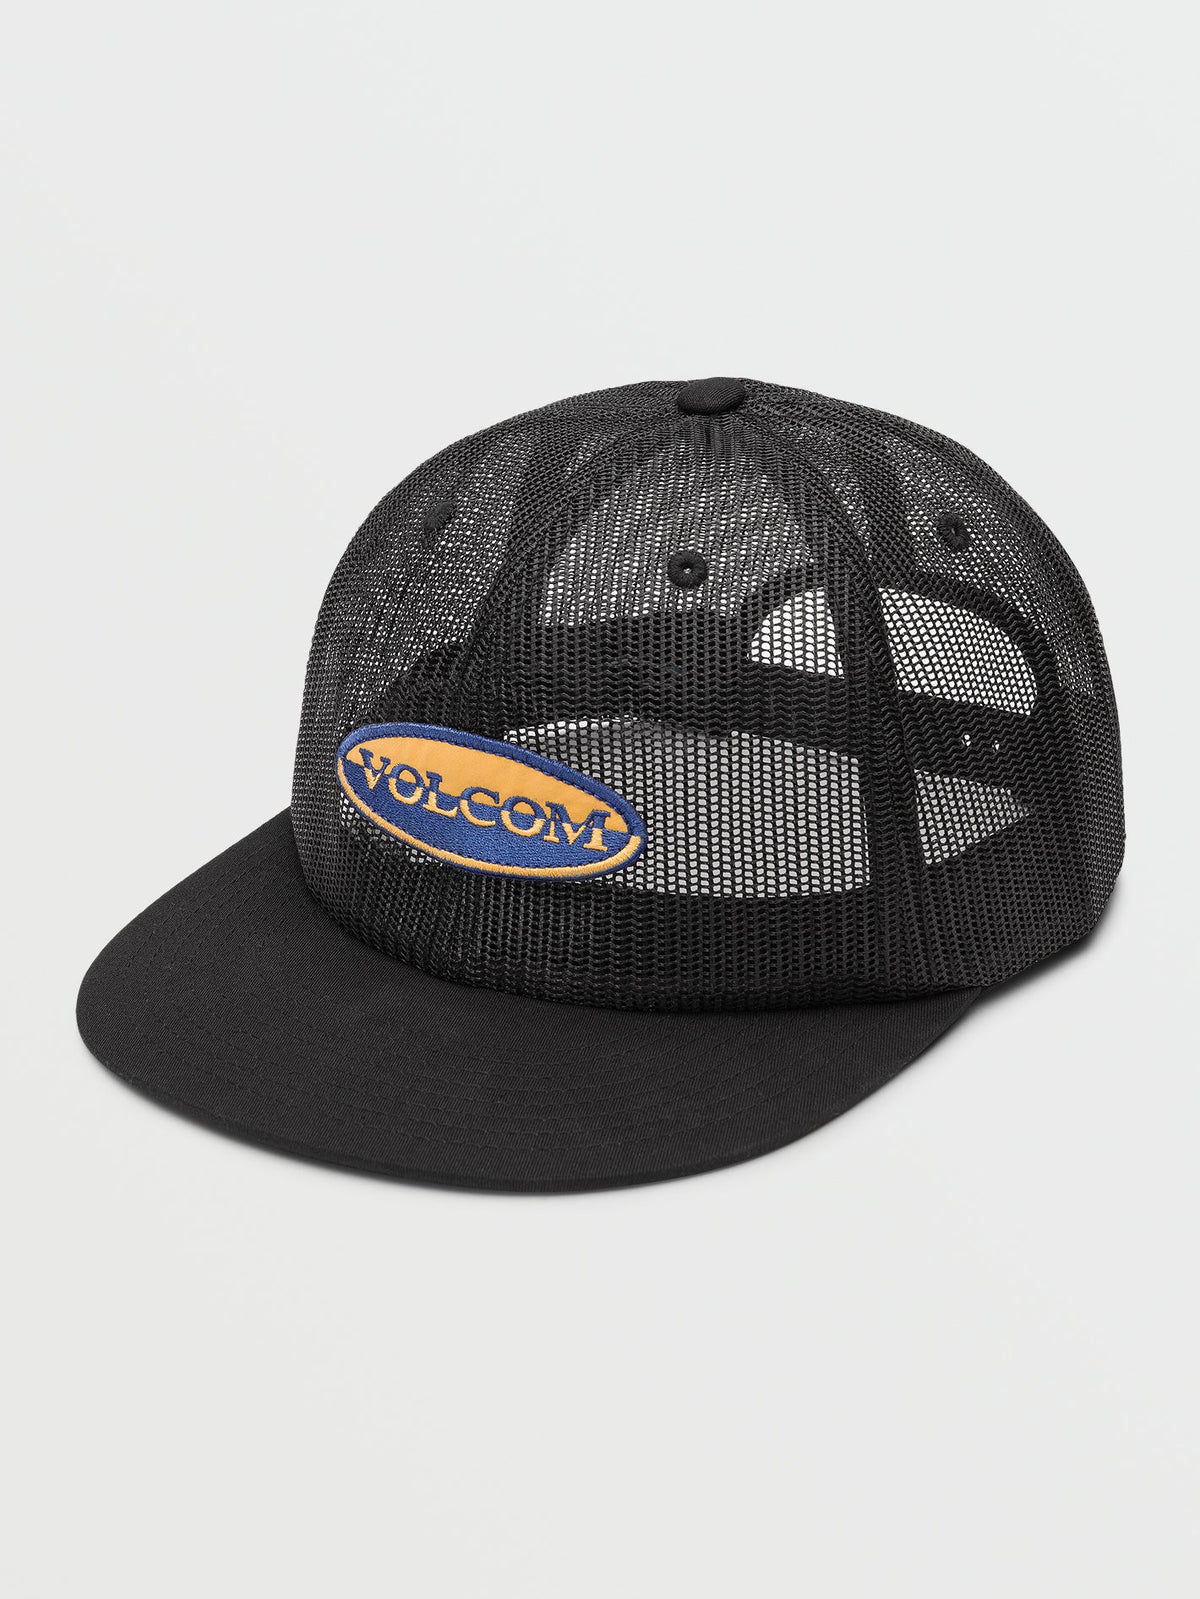 Volcom Meshington Trucker Men's Hat Black